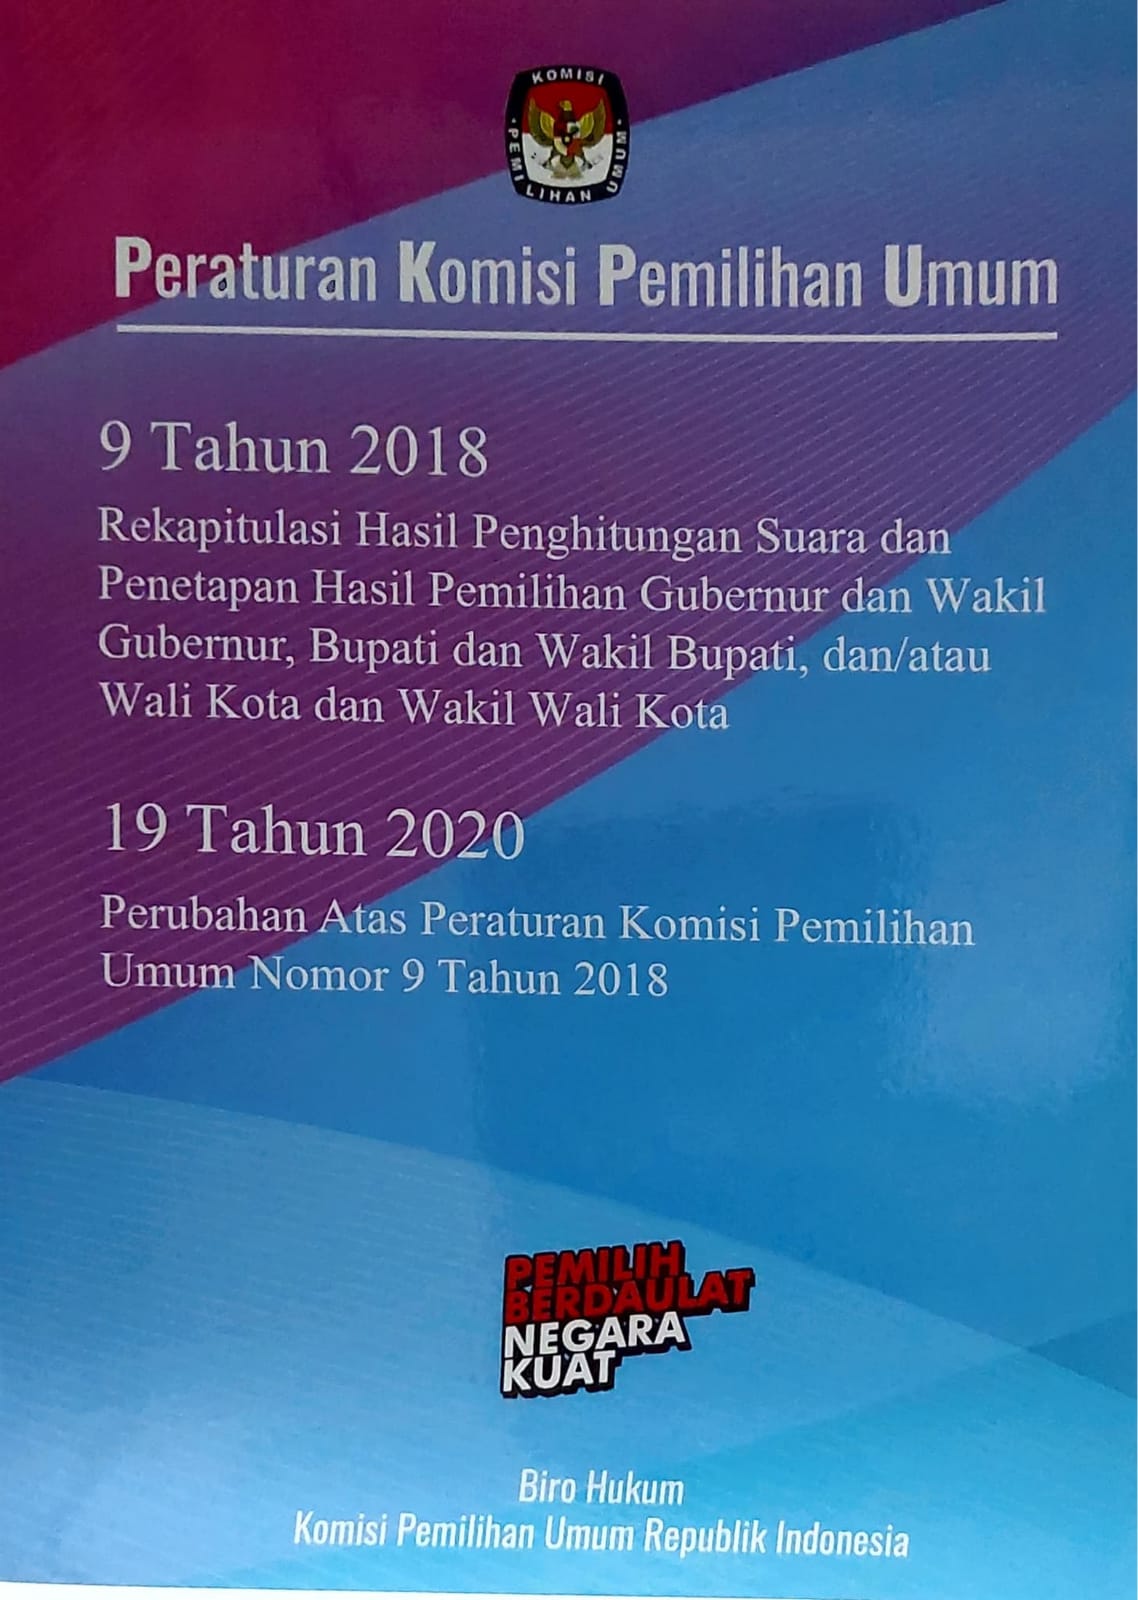 Peraturan komisi pemilihan umum nomor 9 tahun 2018 dan 19 tahun 2020